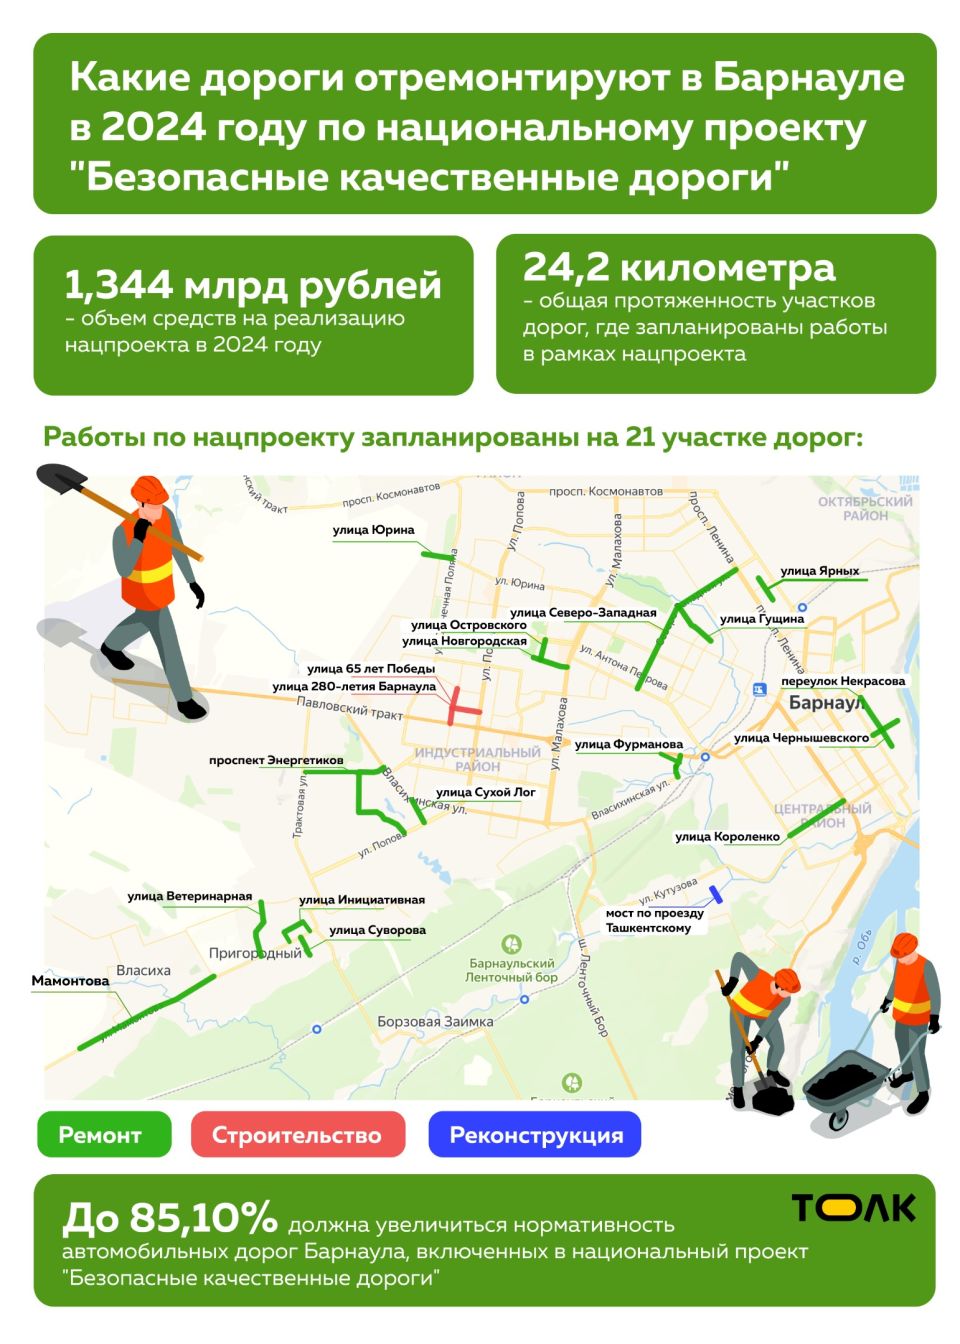 Какие дороги построят и обновят в Барнауле в 2024 году по нацпроекту